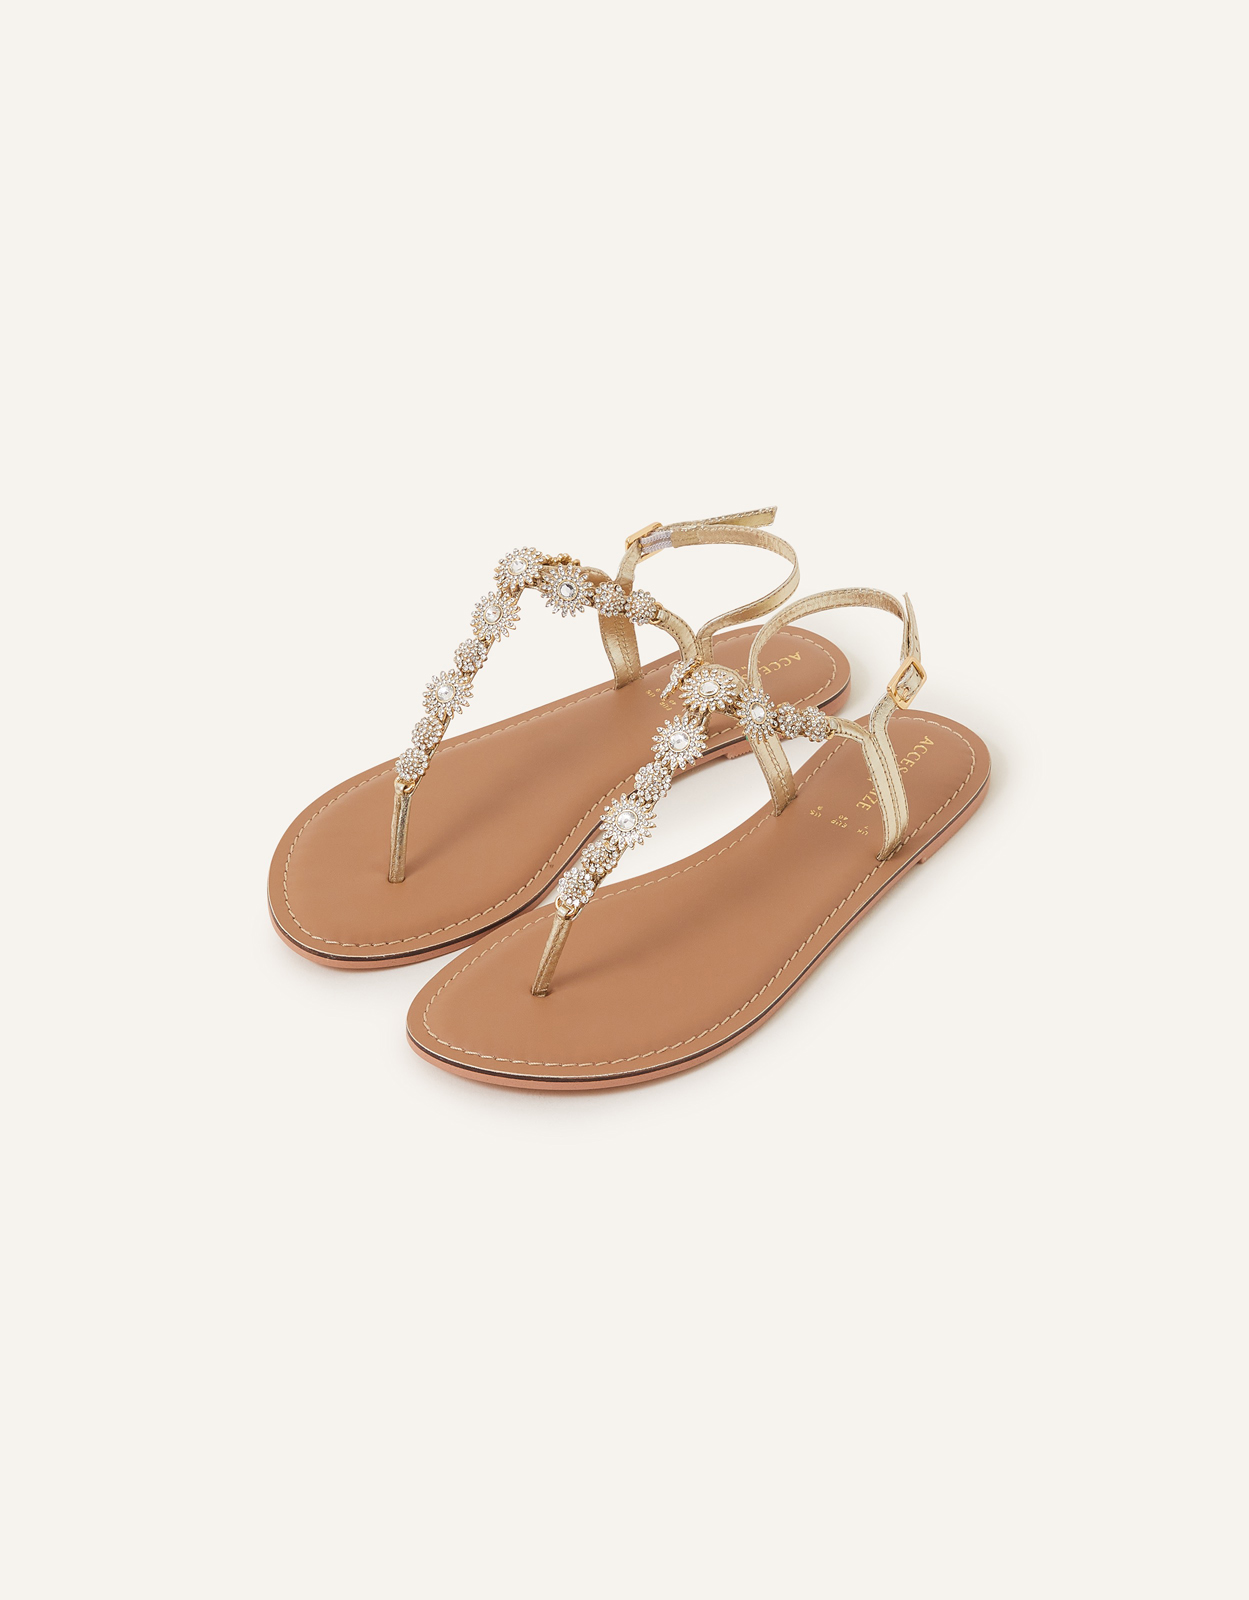 Accessorize Women's Rome Sparkle Sandals Gold, Size: 39